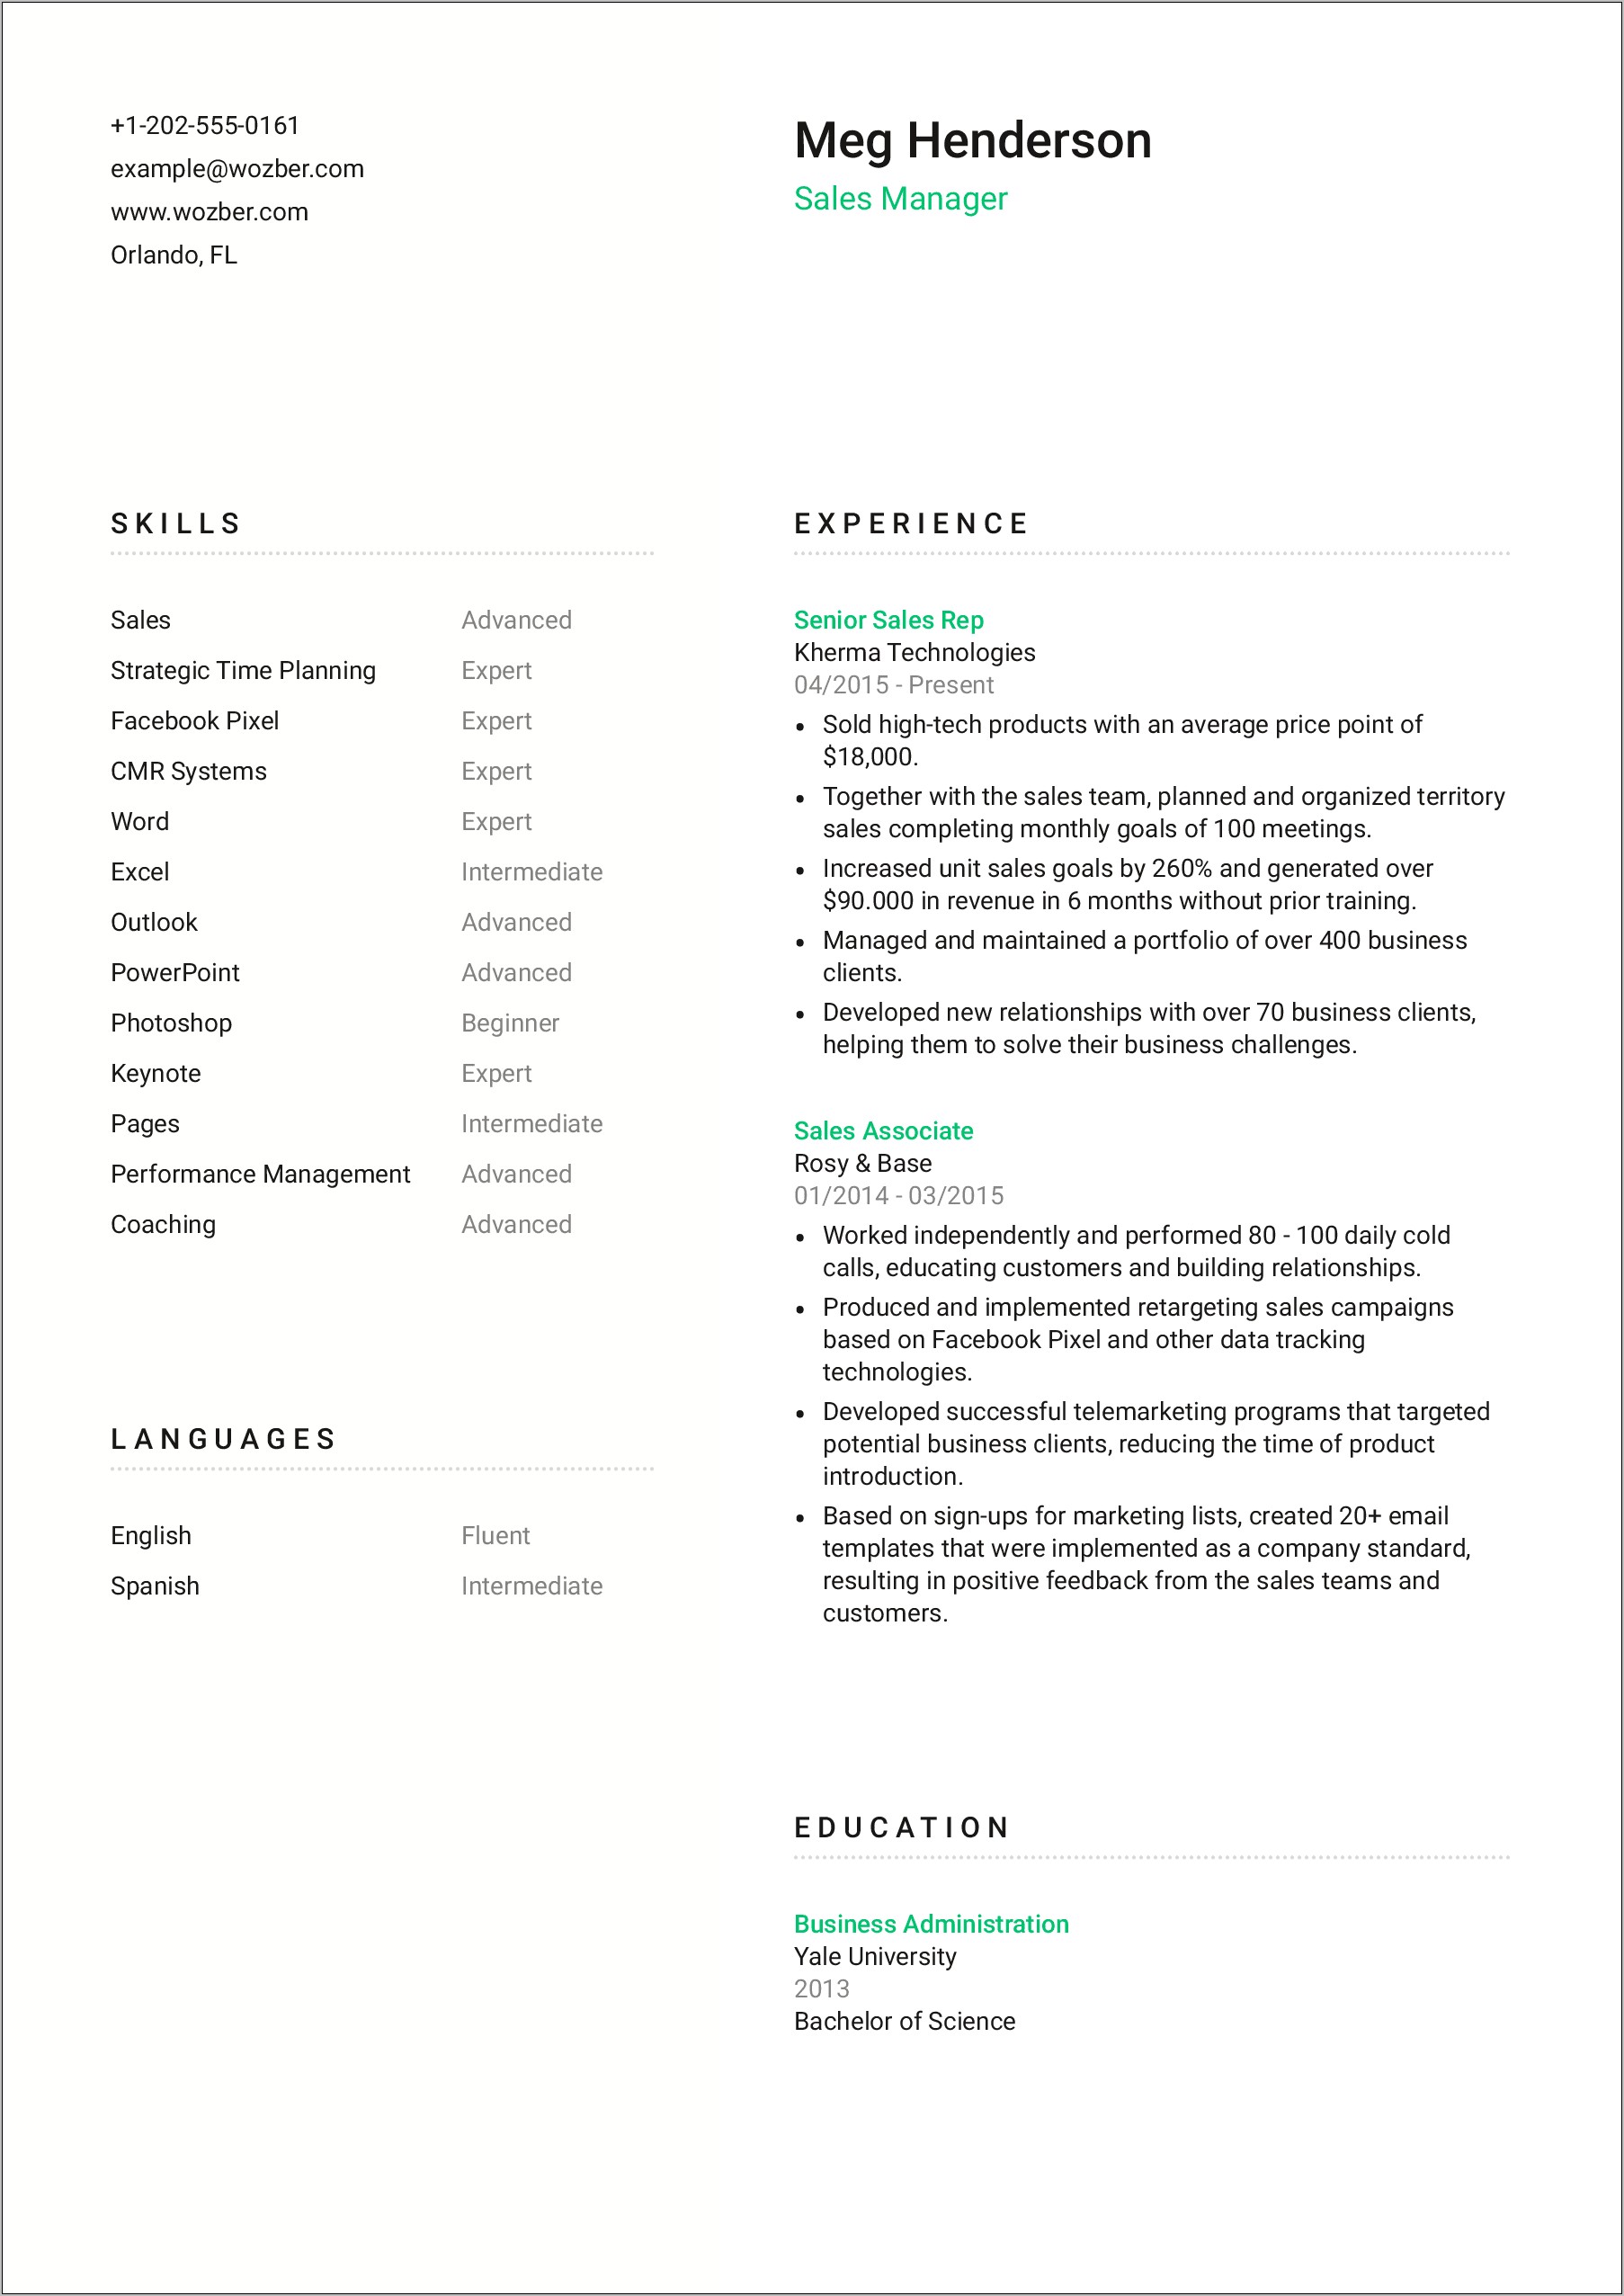 Sales Manager Description For Resume